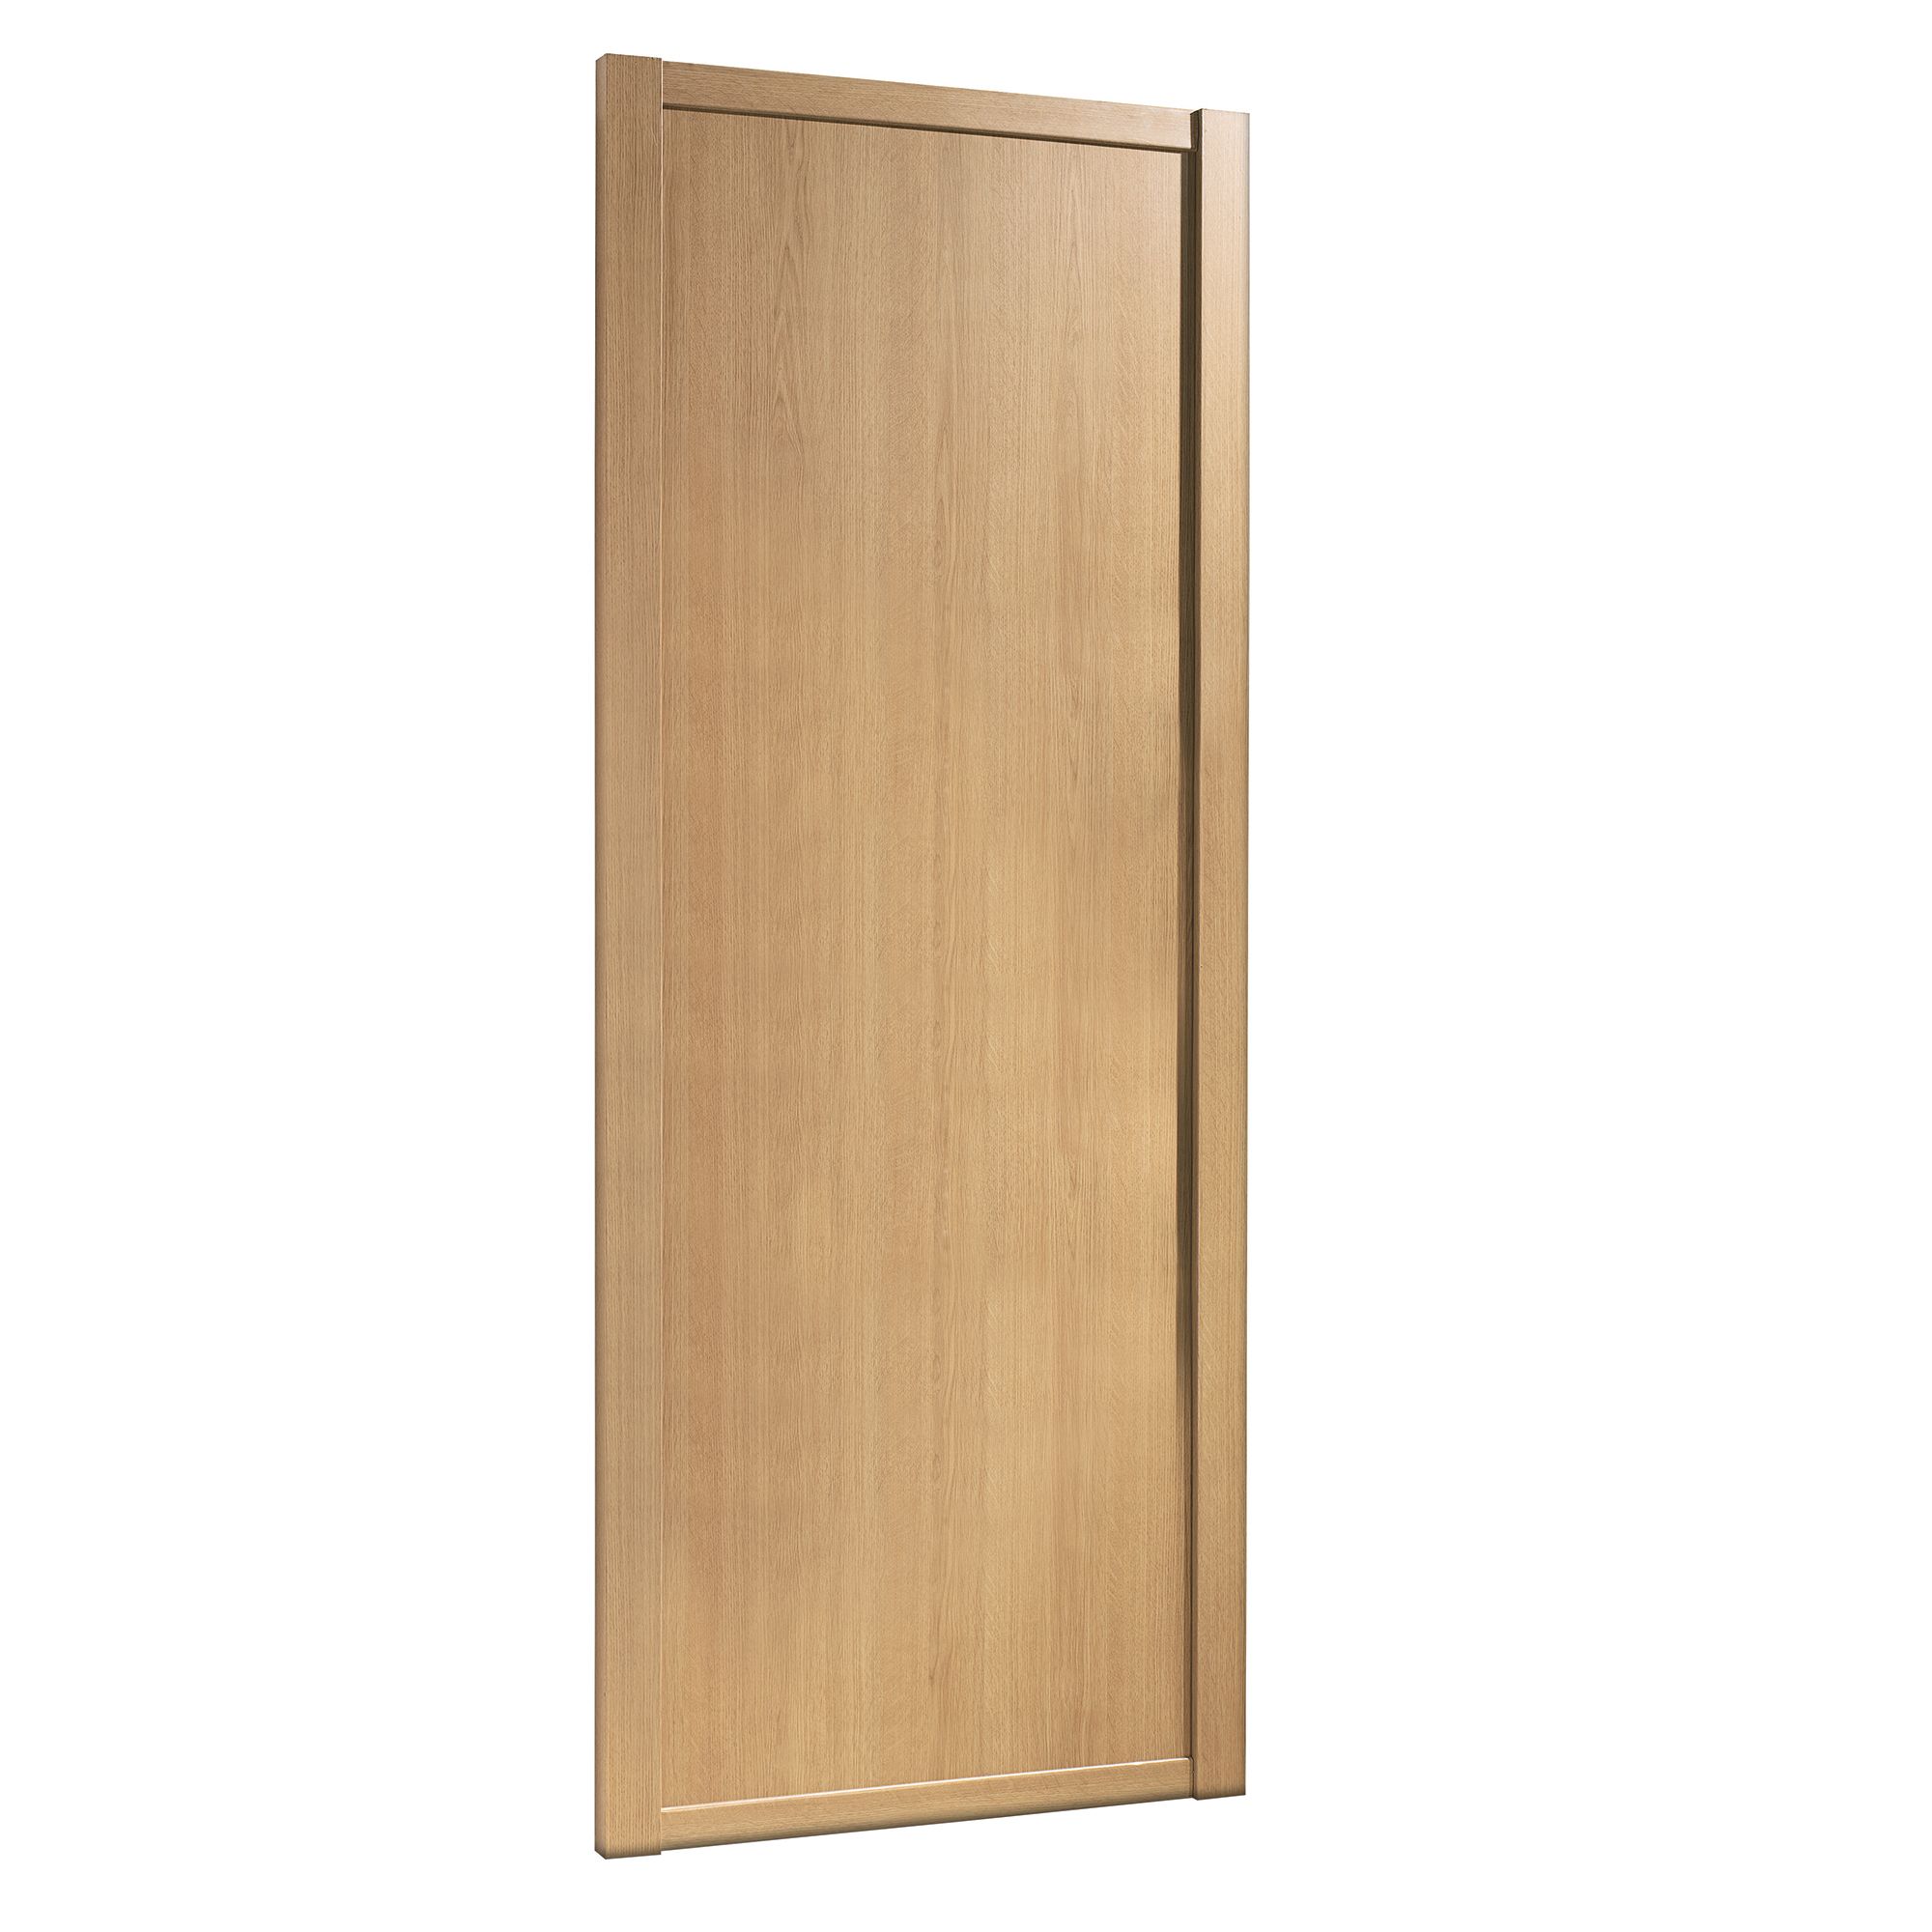 Spacepro Shaker Oak effect Sliding wardrobe door (H) 2220mm x (W) 610mm